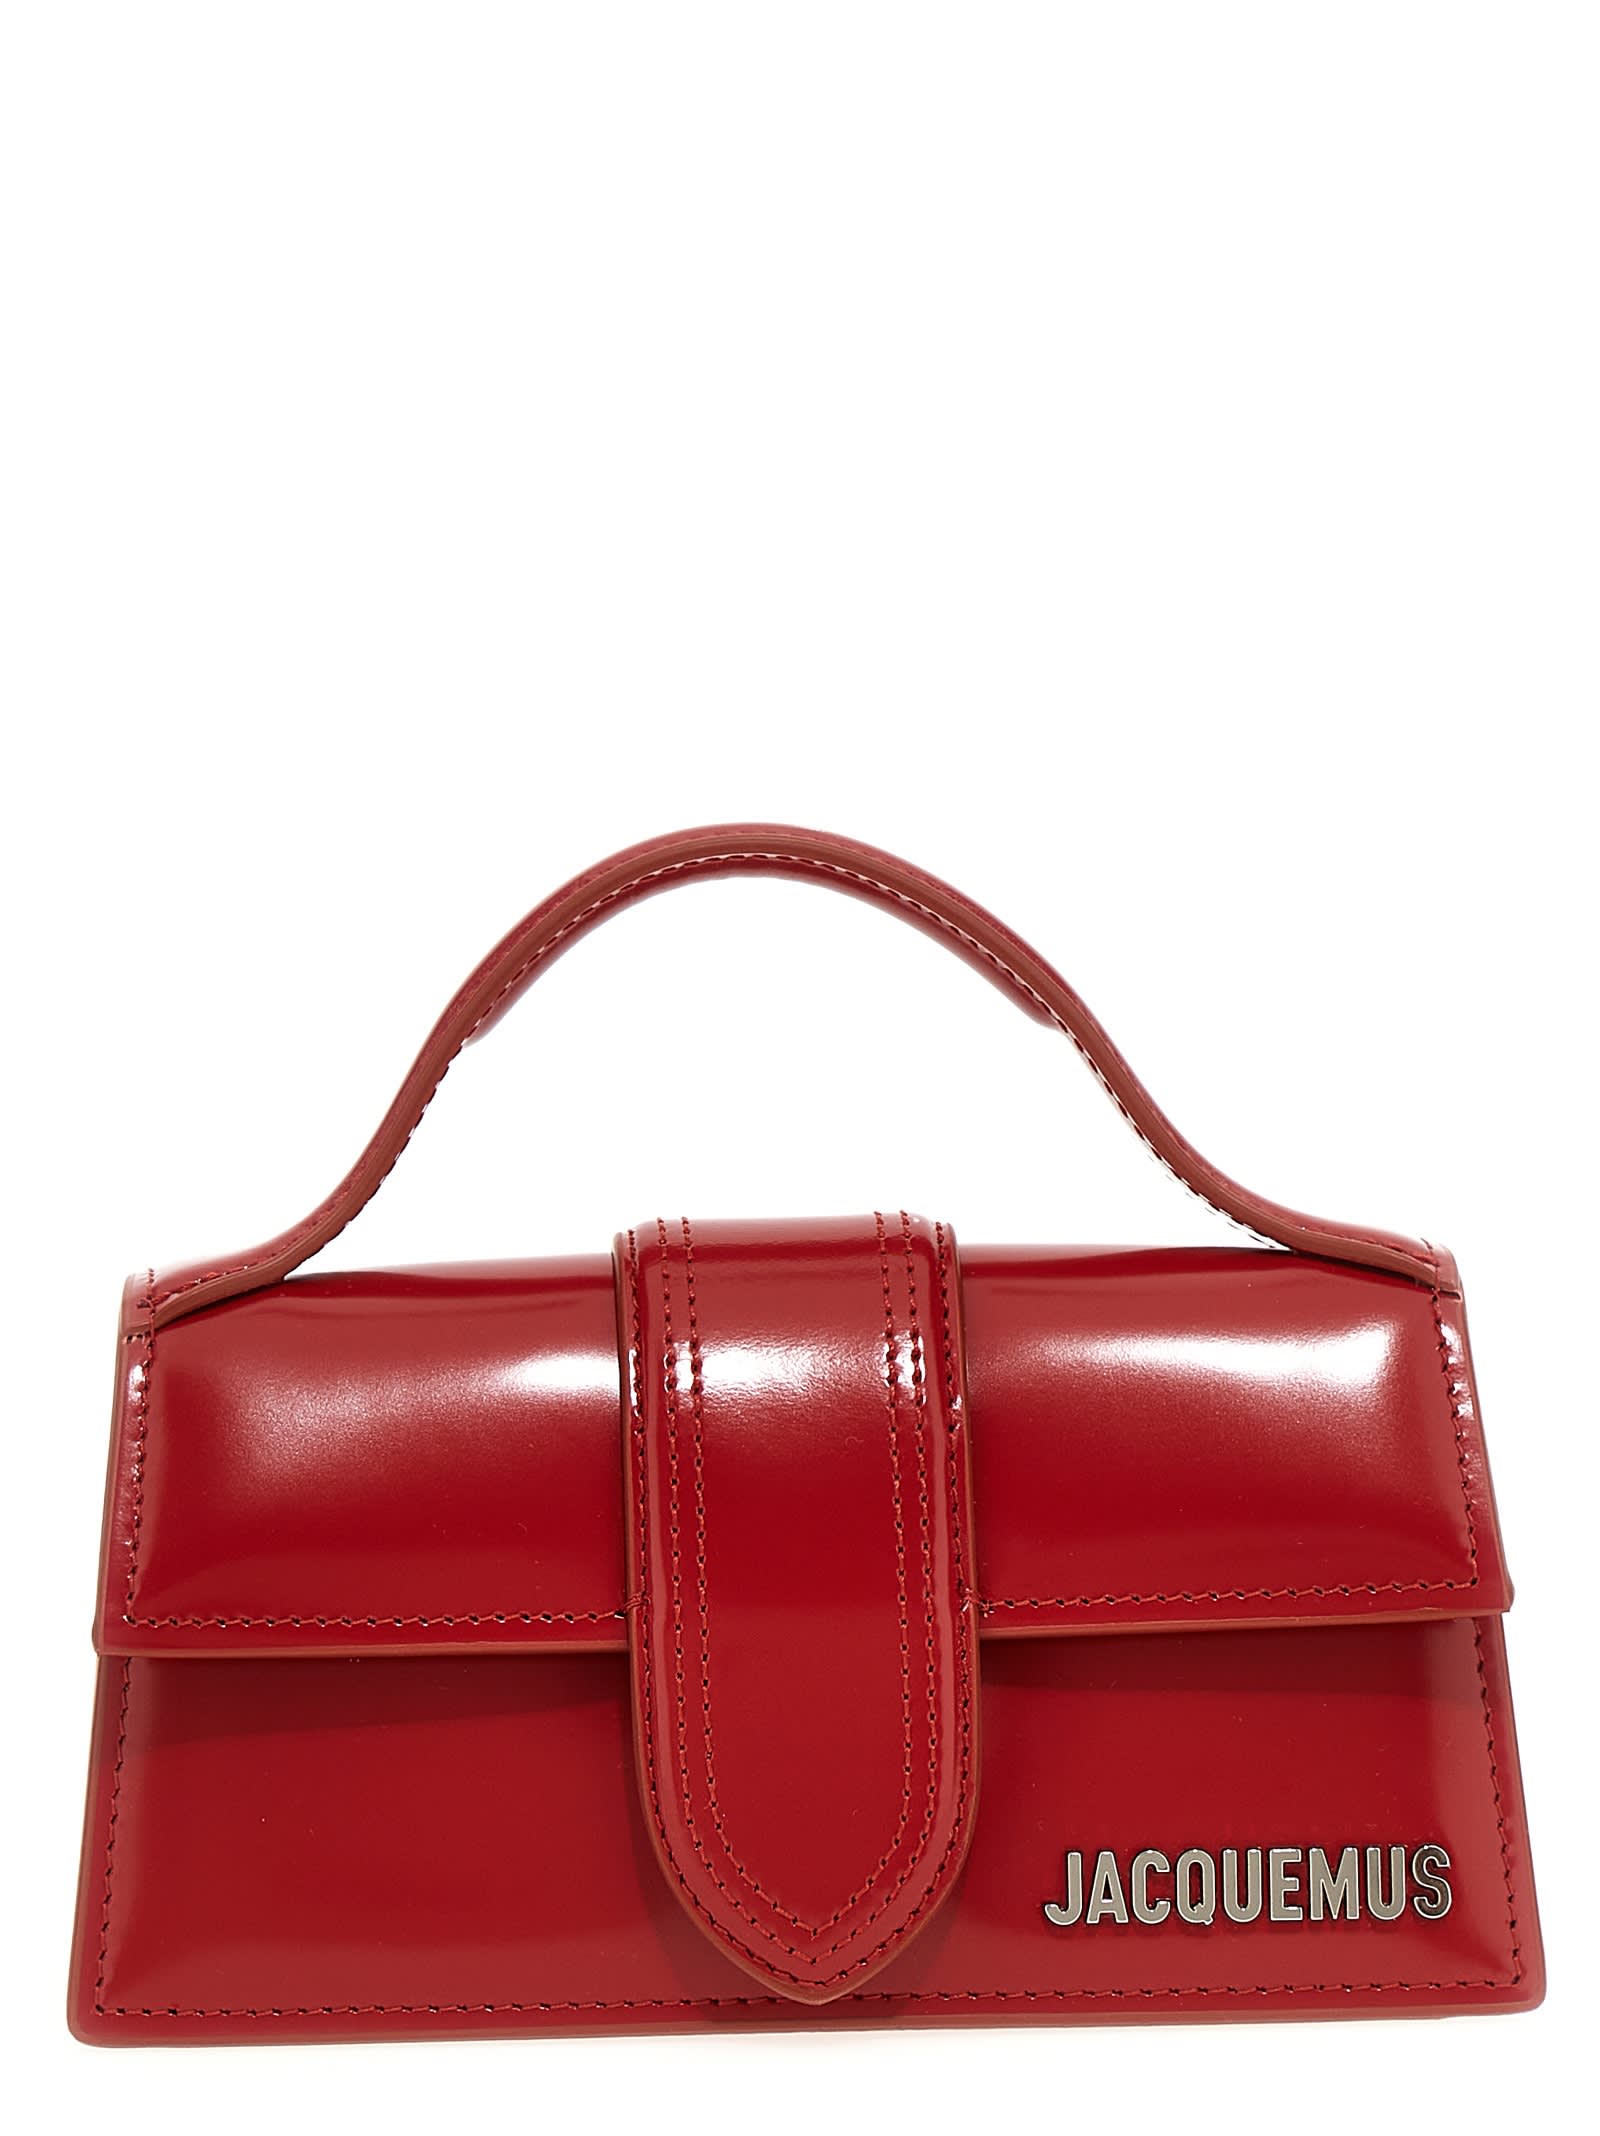 Jacquemus Le Bambino Handbag In Red